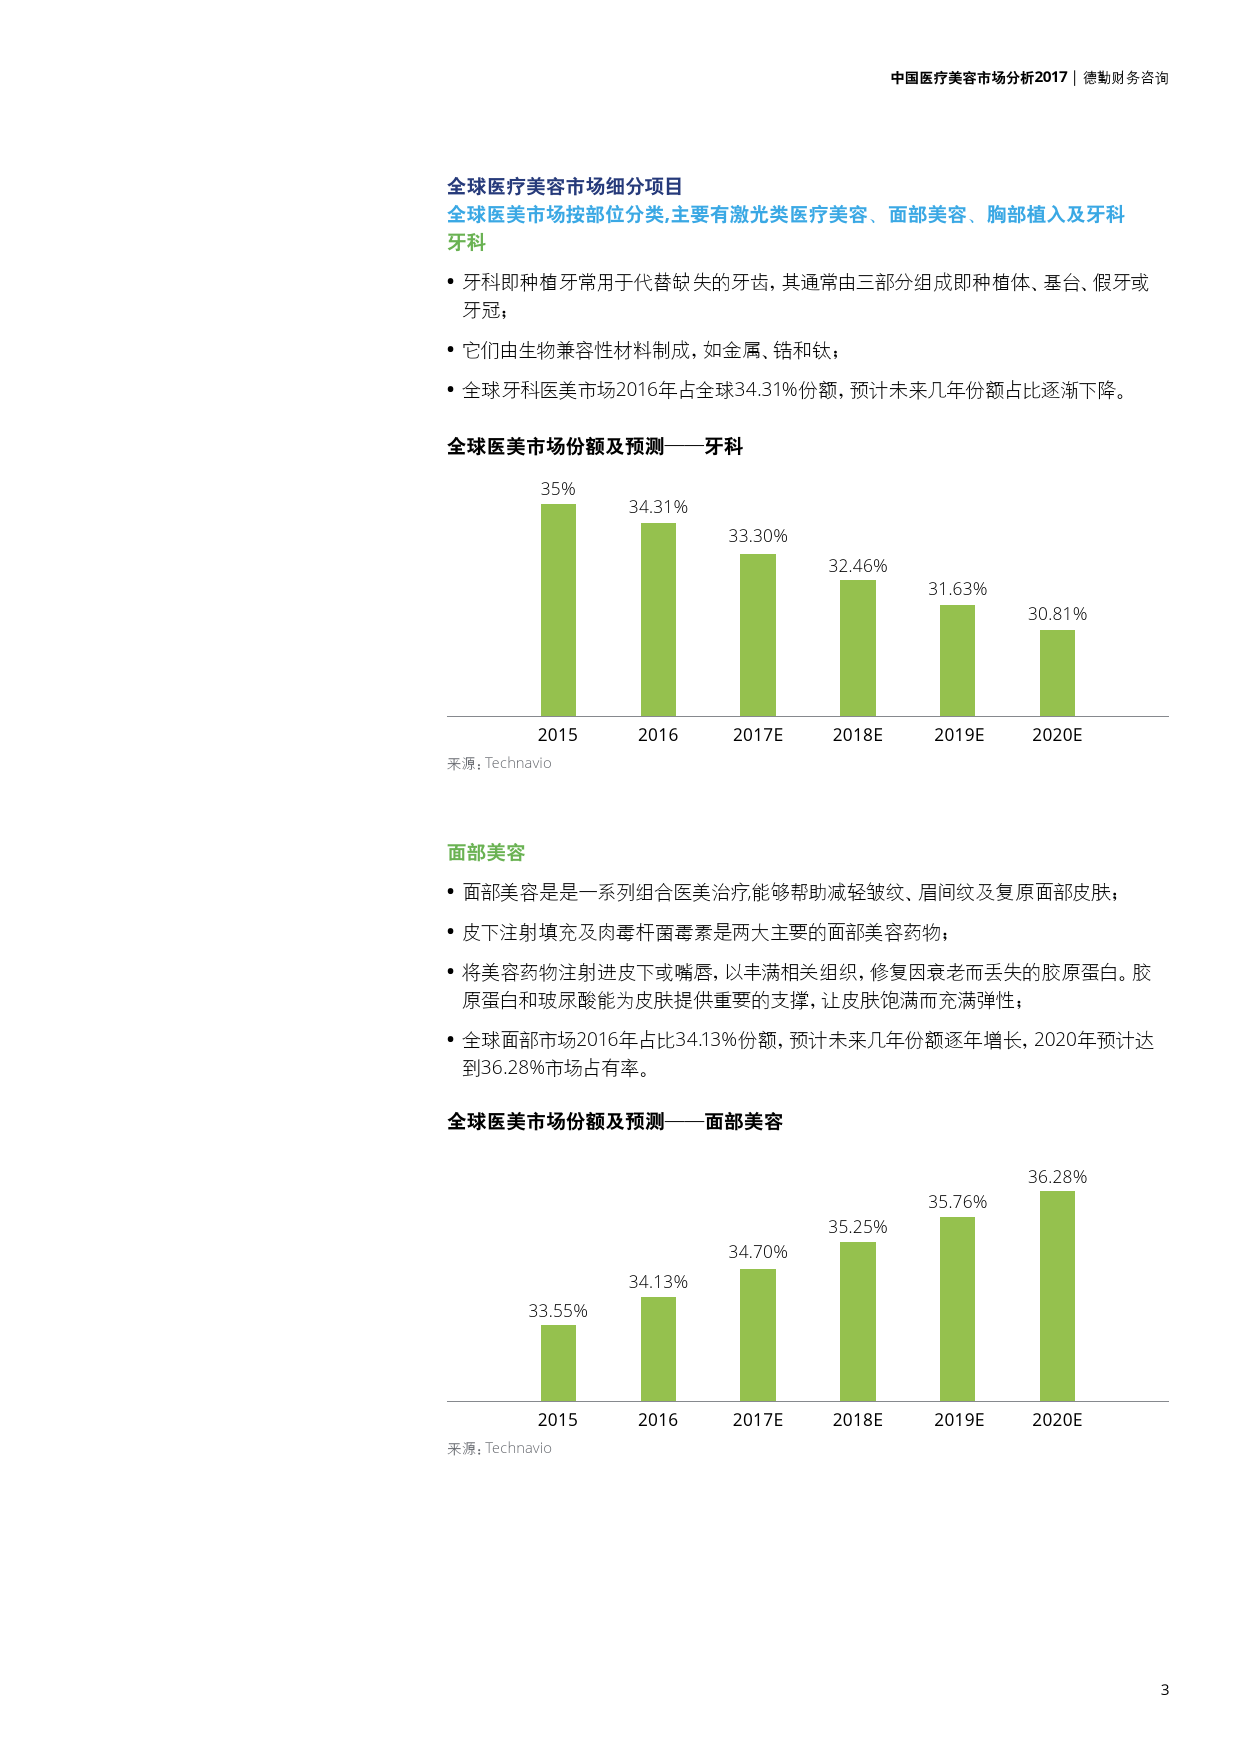 德勤咨询:2017中国医疗美容市场分析|中国医疗